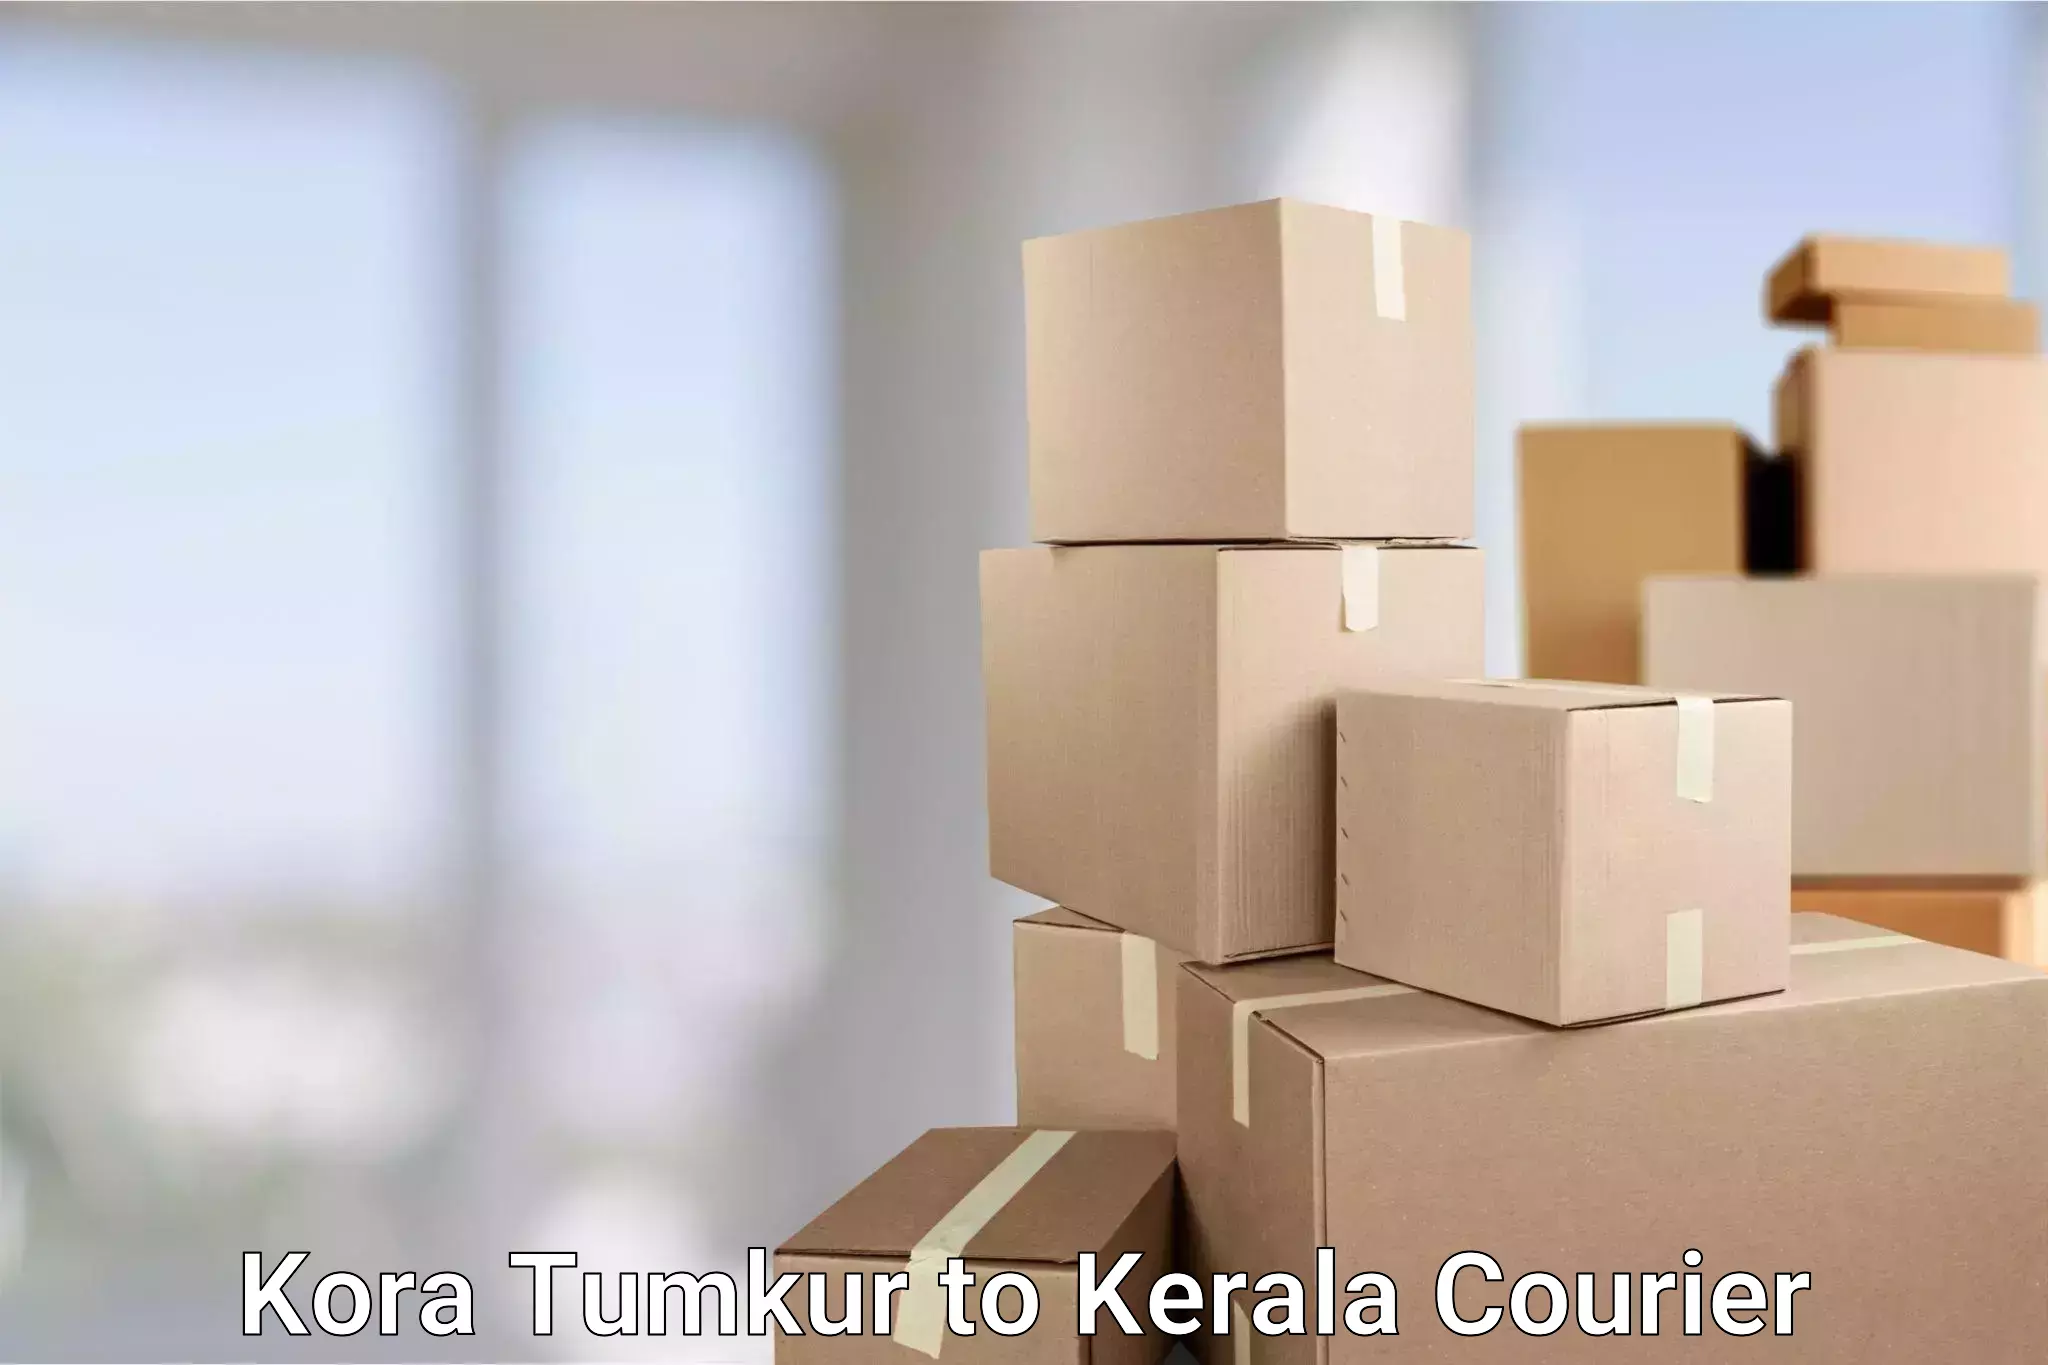 Flexible delivery schedules Kora Tumkur to Chavara